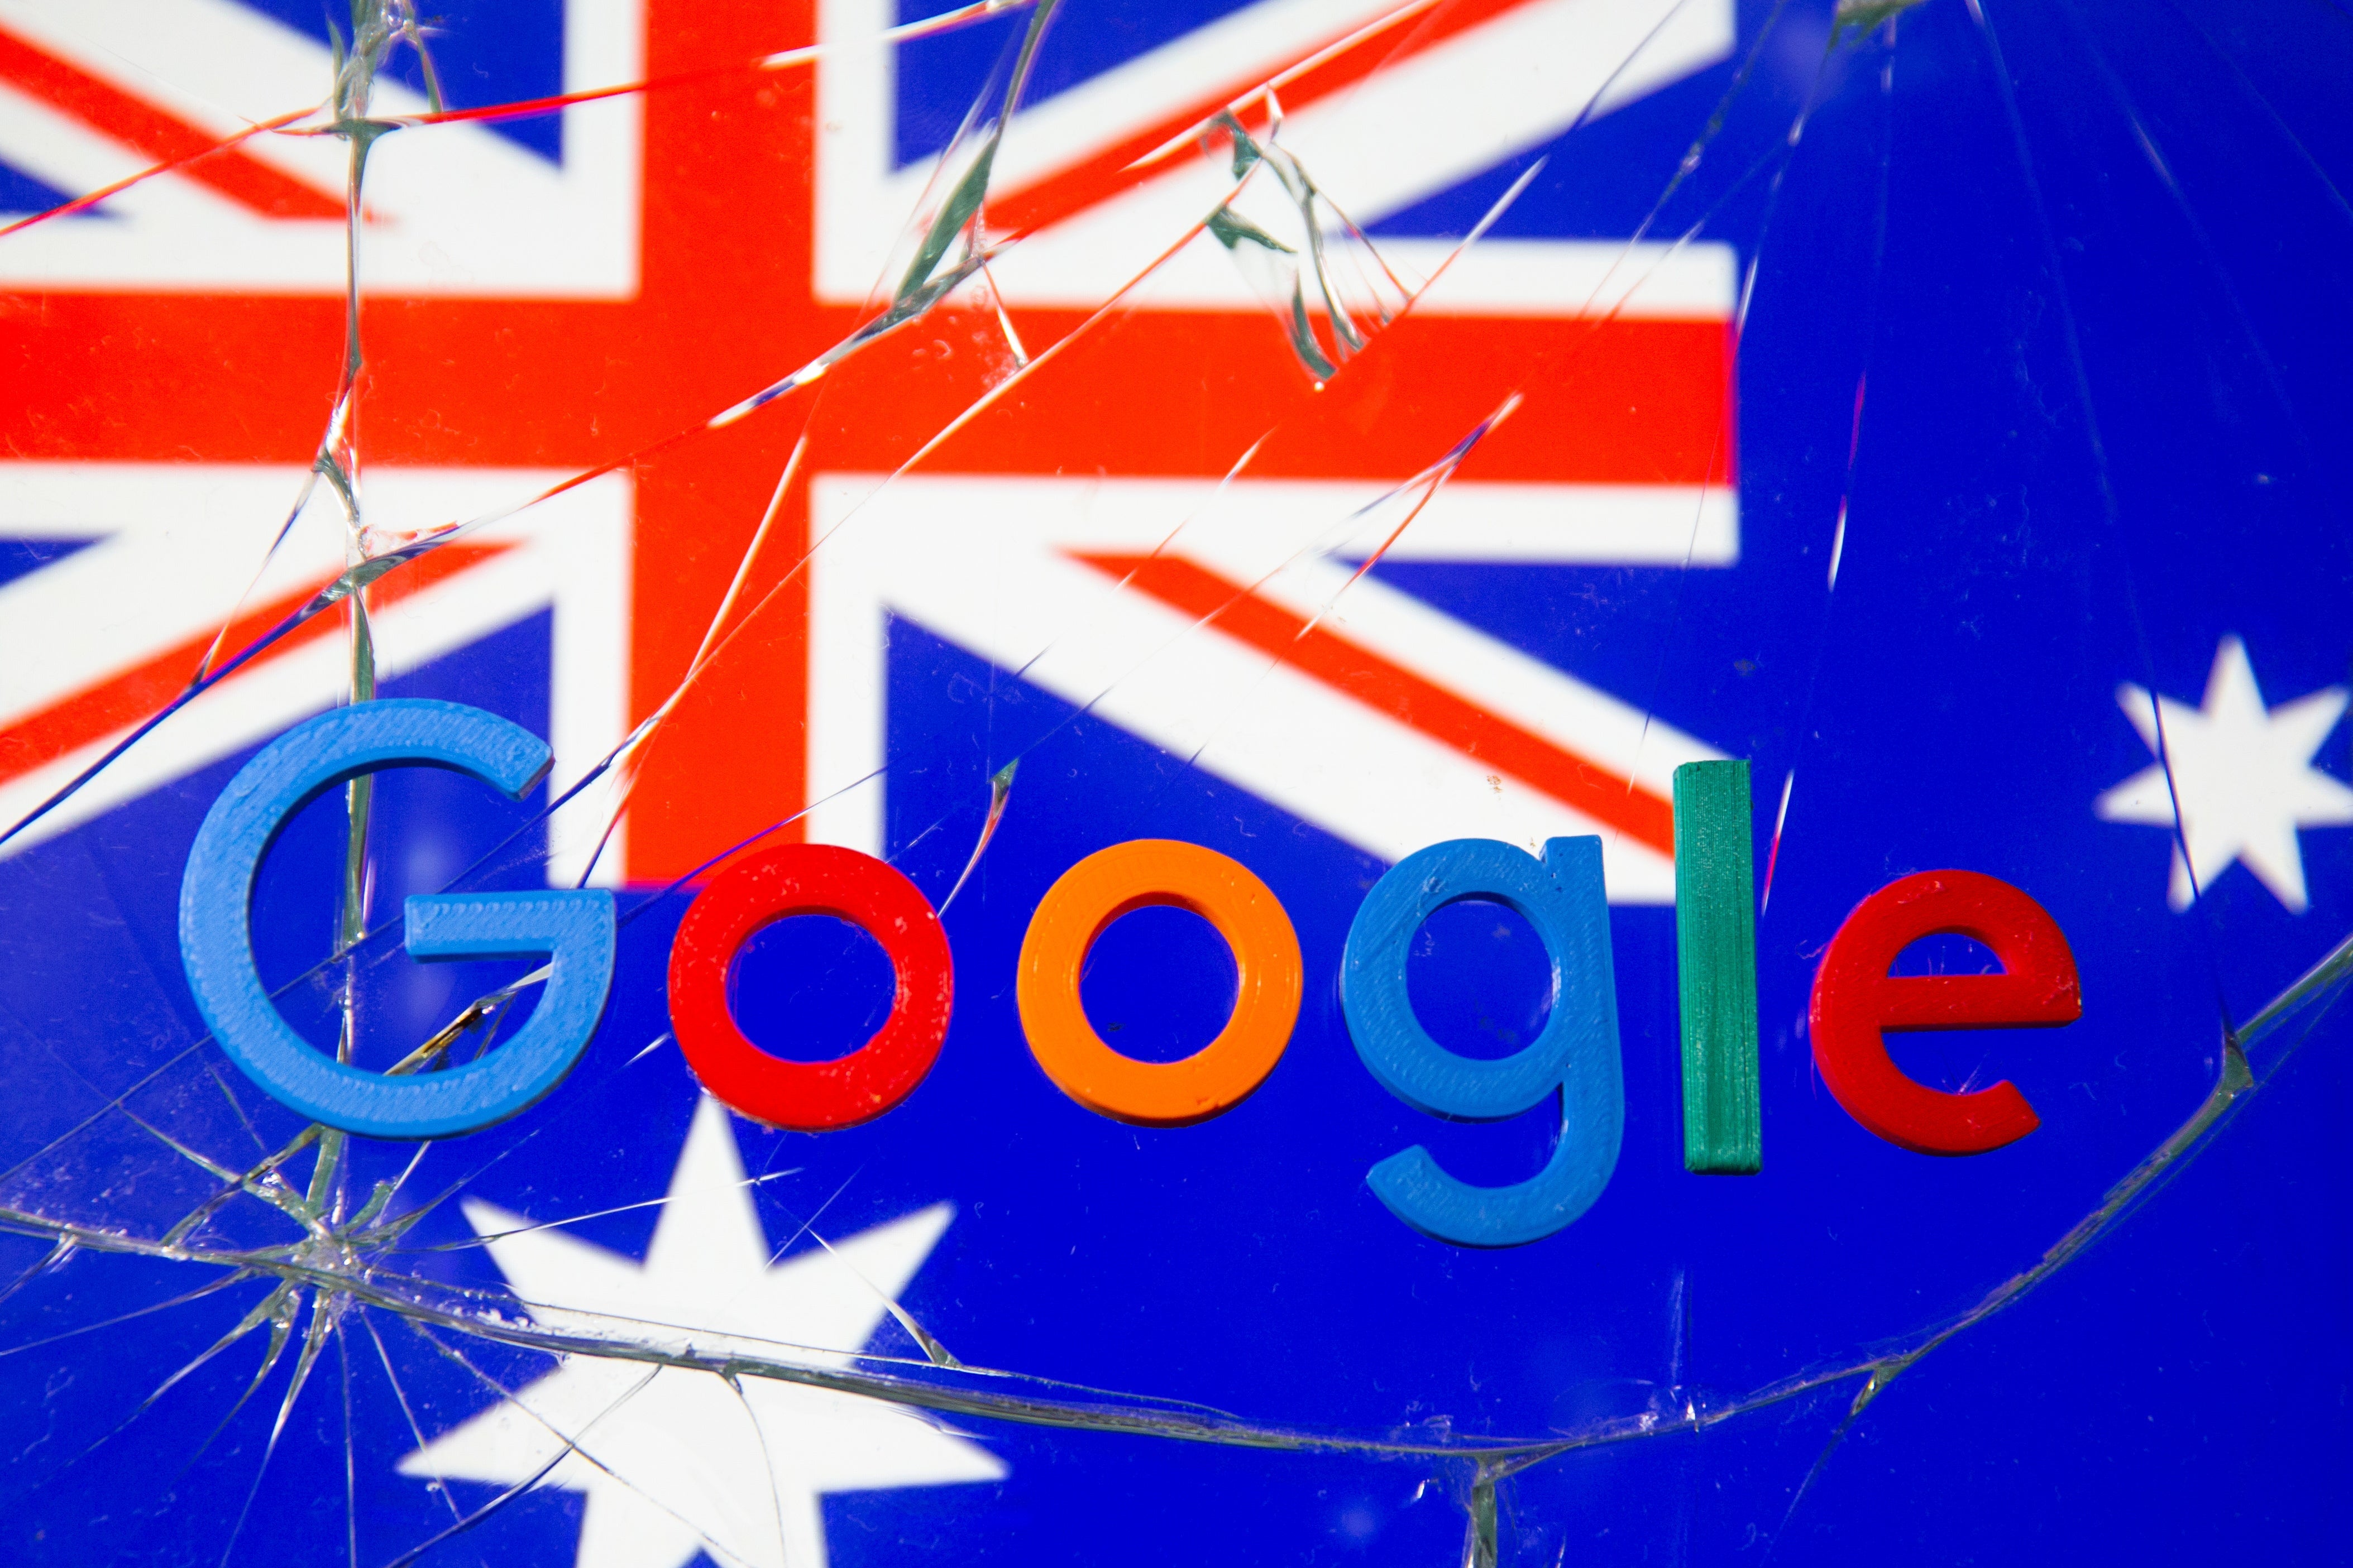 An Australian flag and the Google logo behind broken glass. 